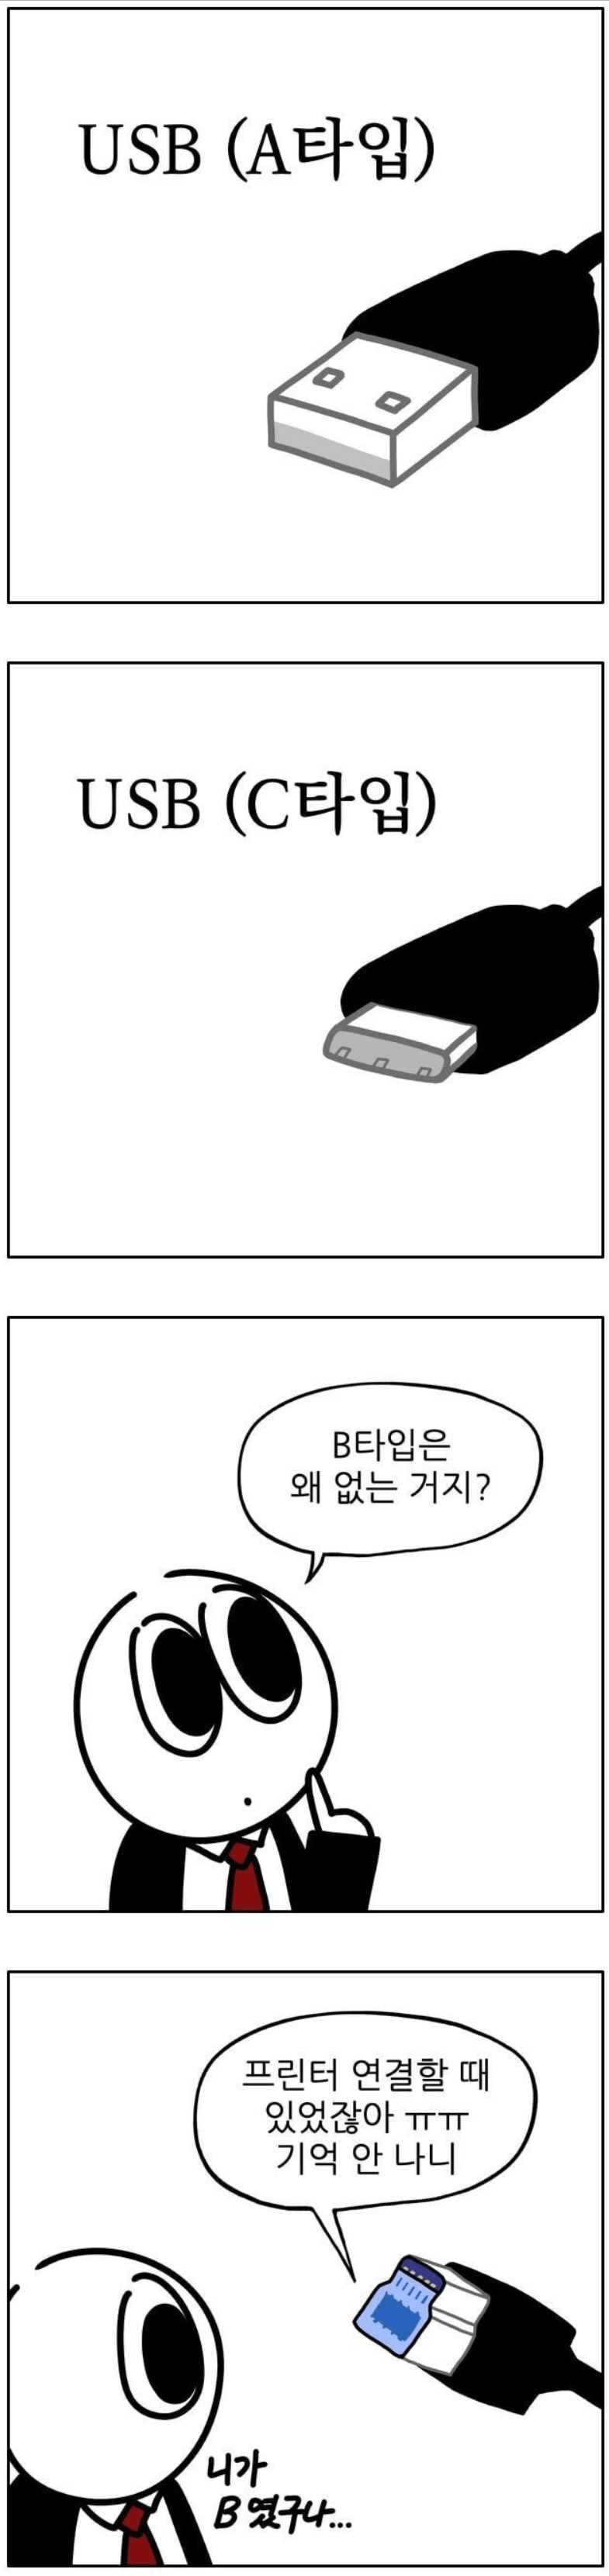 USB B타입